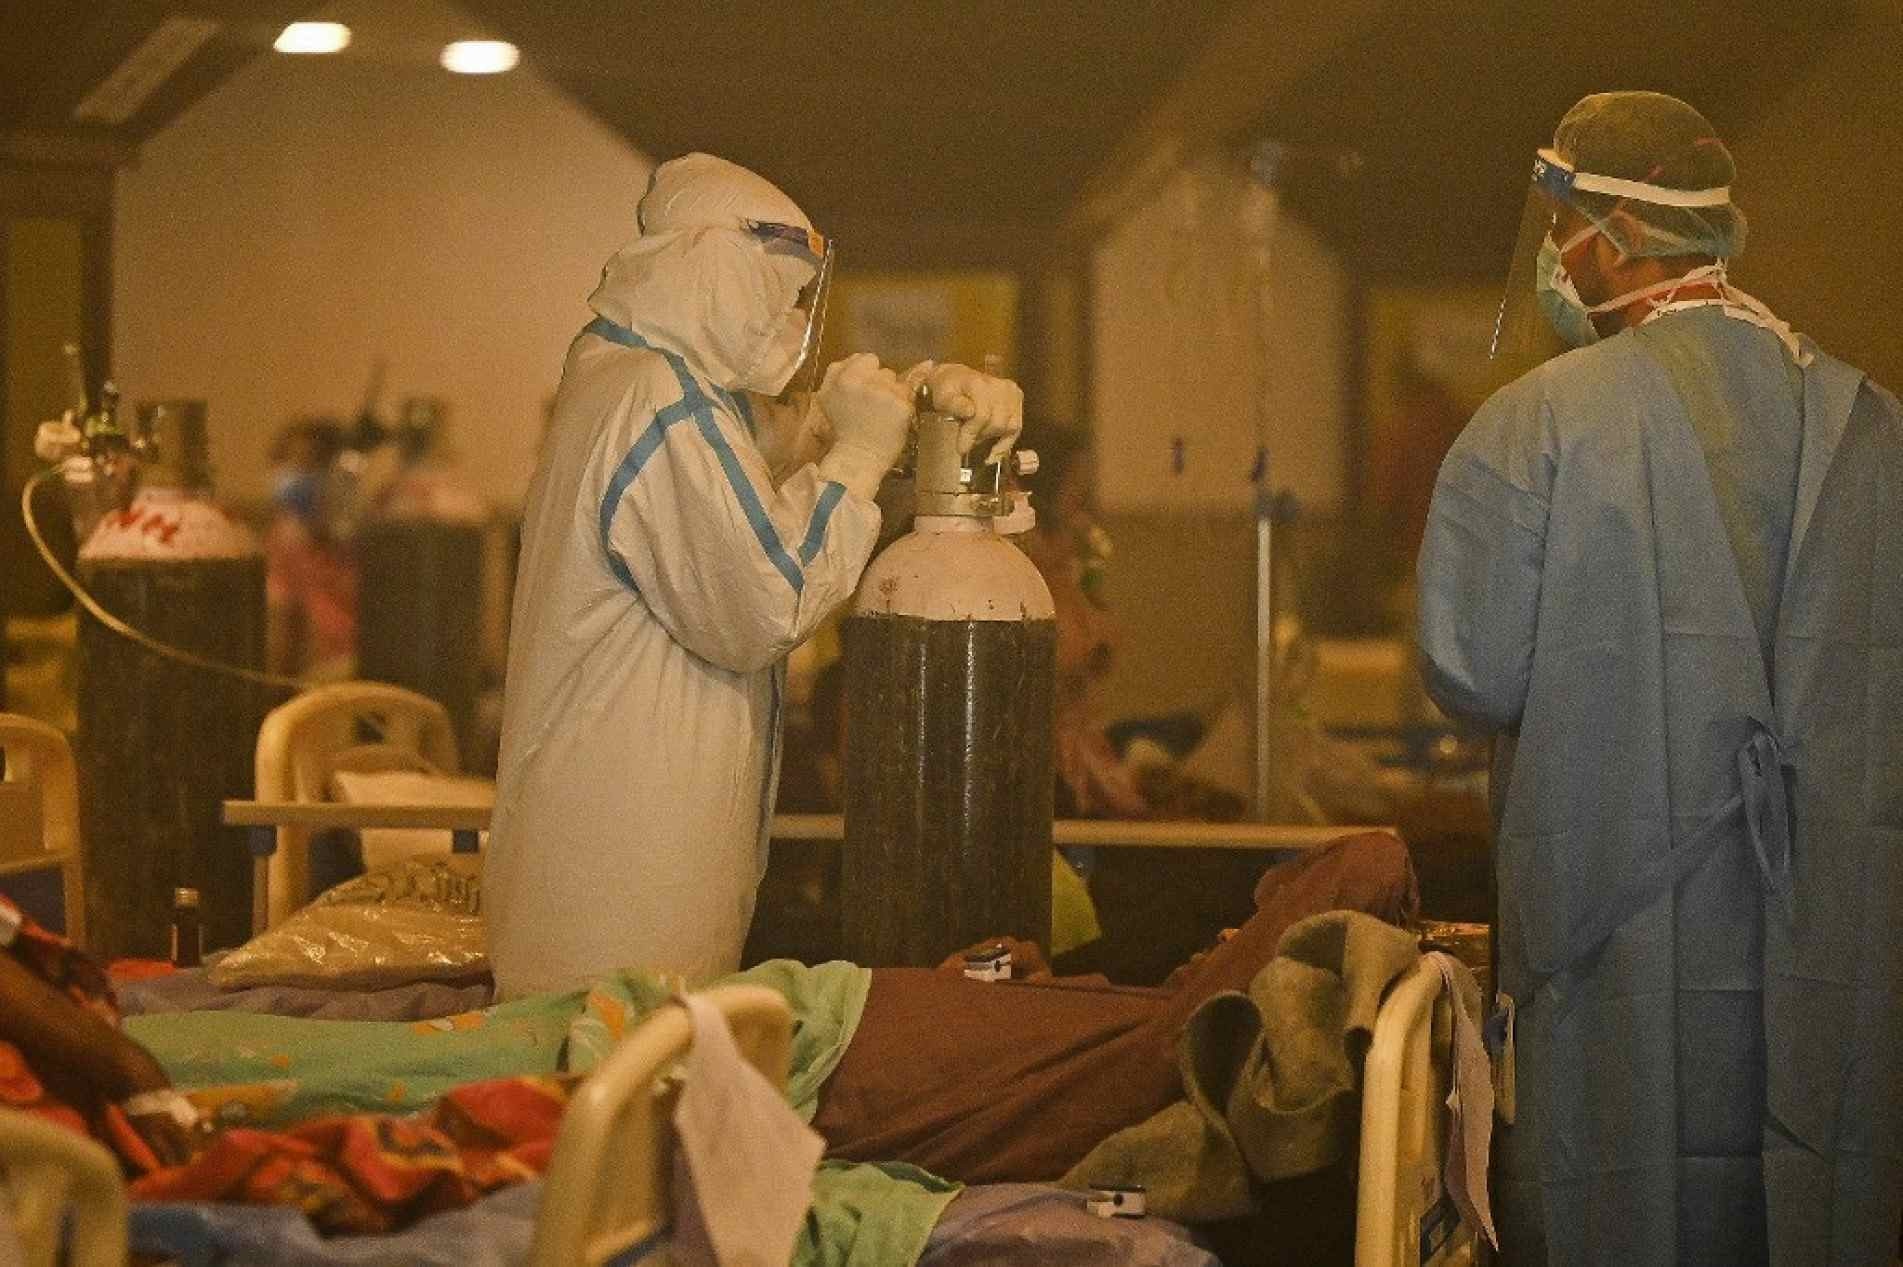 índia enfrenta um colapso na pandemia de Covid-19